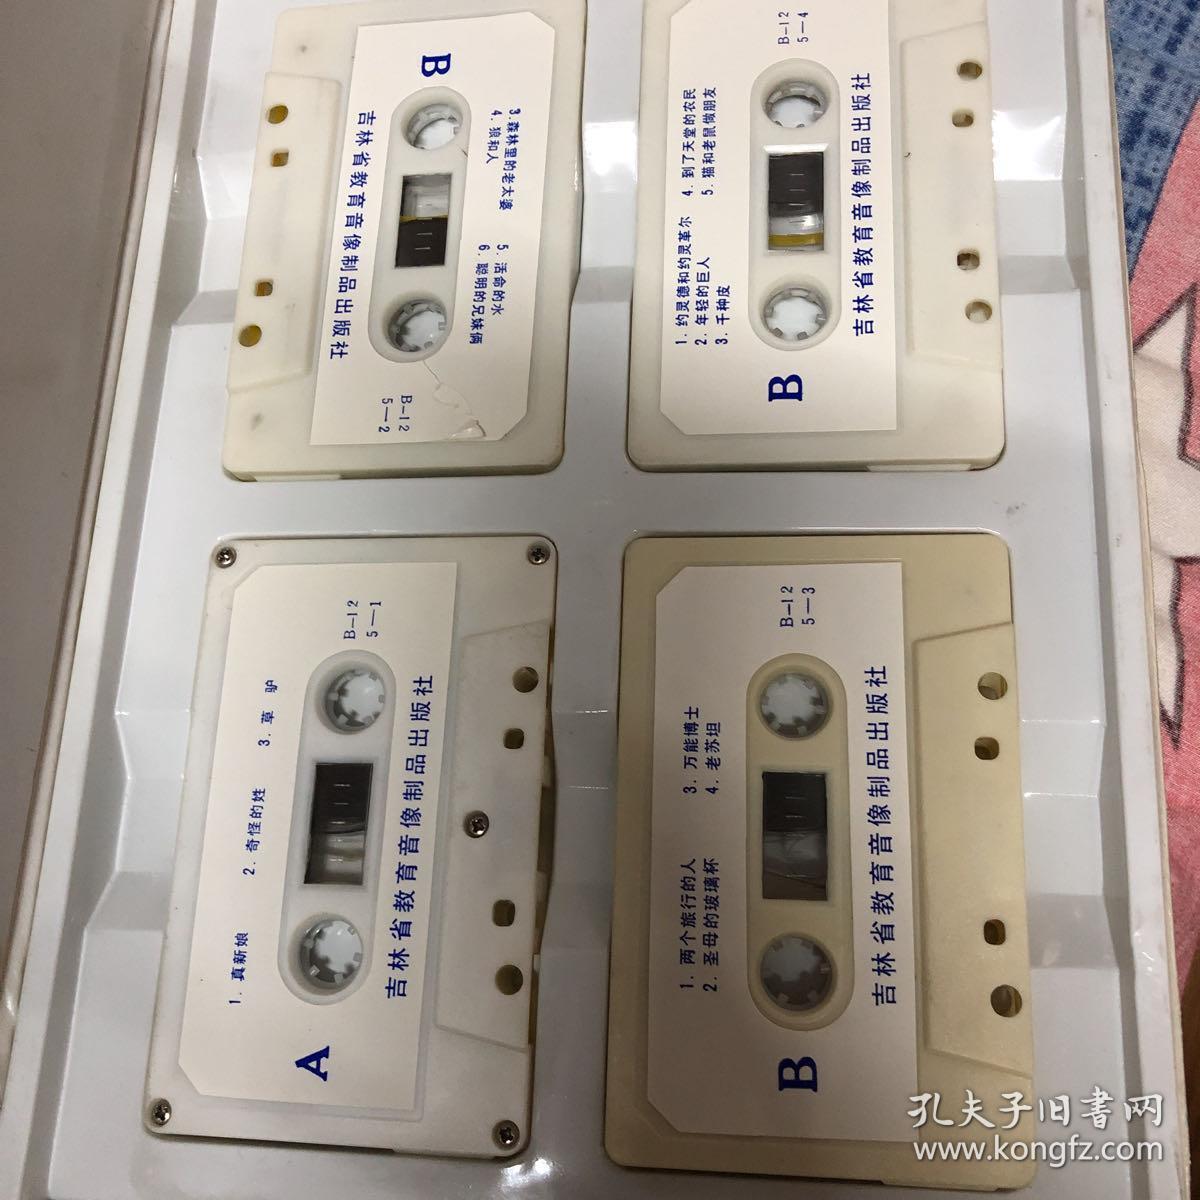 鞠萍演播的配乐童话老磁带：格林童话全集（第2、4、5辑）共计100多个故事、第二辑缺一个磁带，大16开塑料盒内有原版磁带4盘